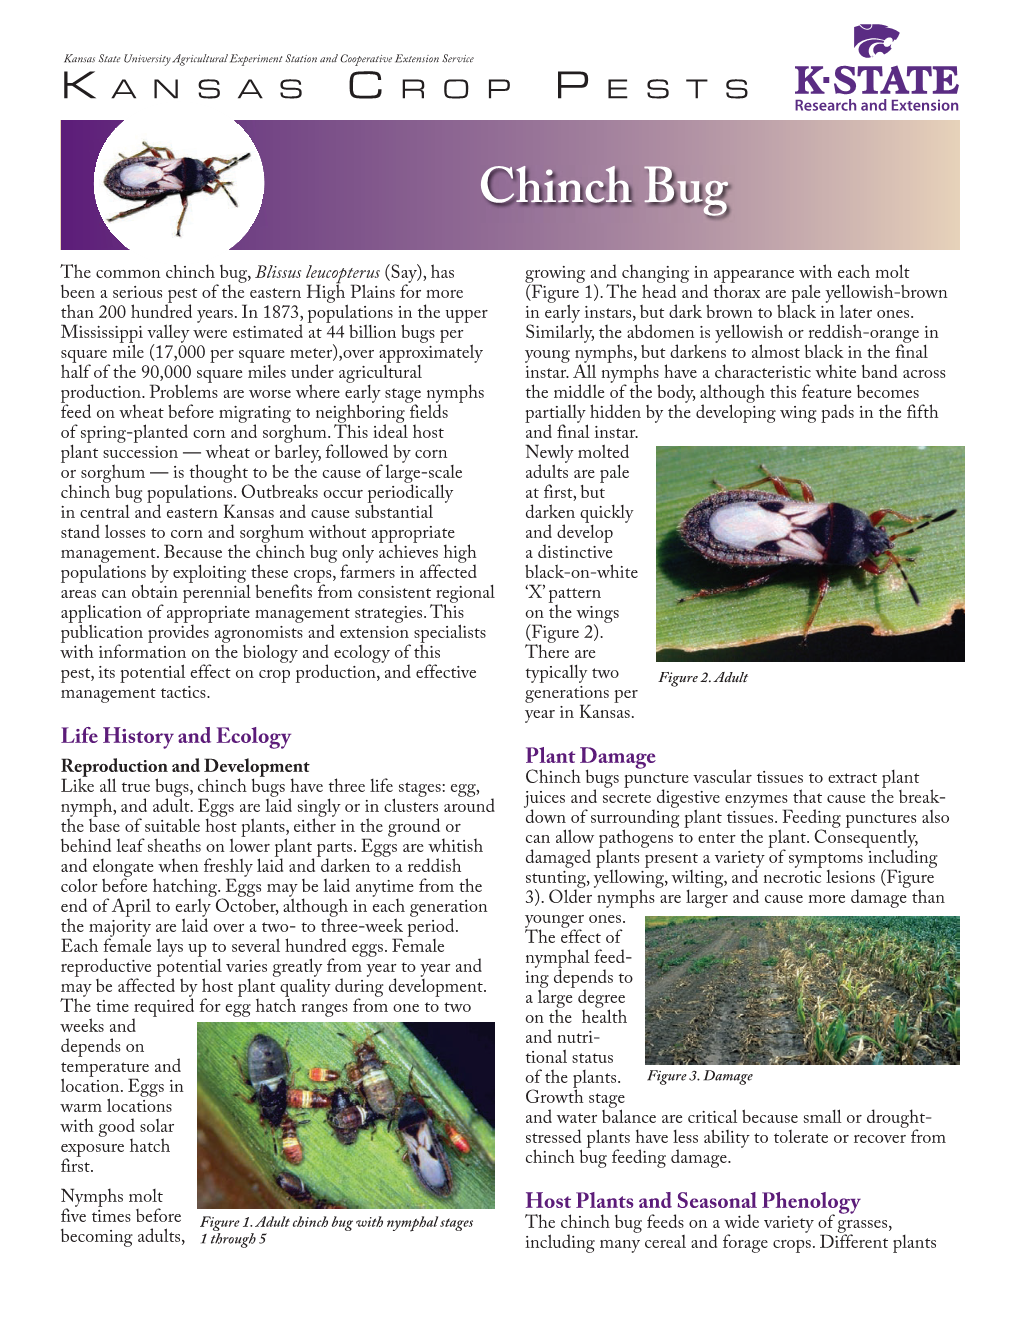 MF3107 Chinch Bug: Kansas Crop Pests